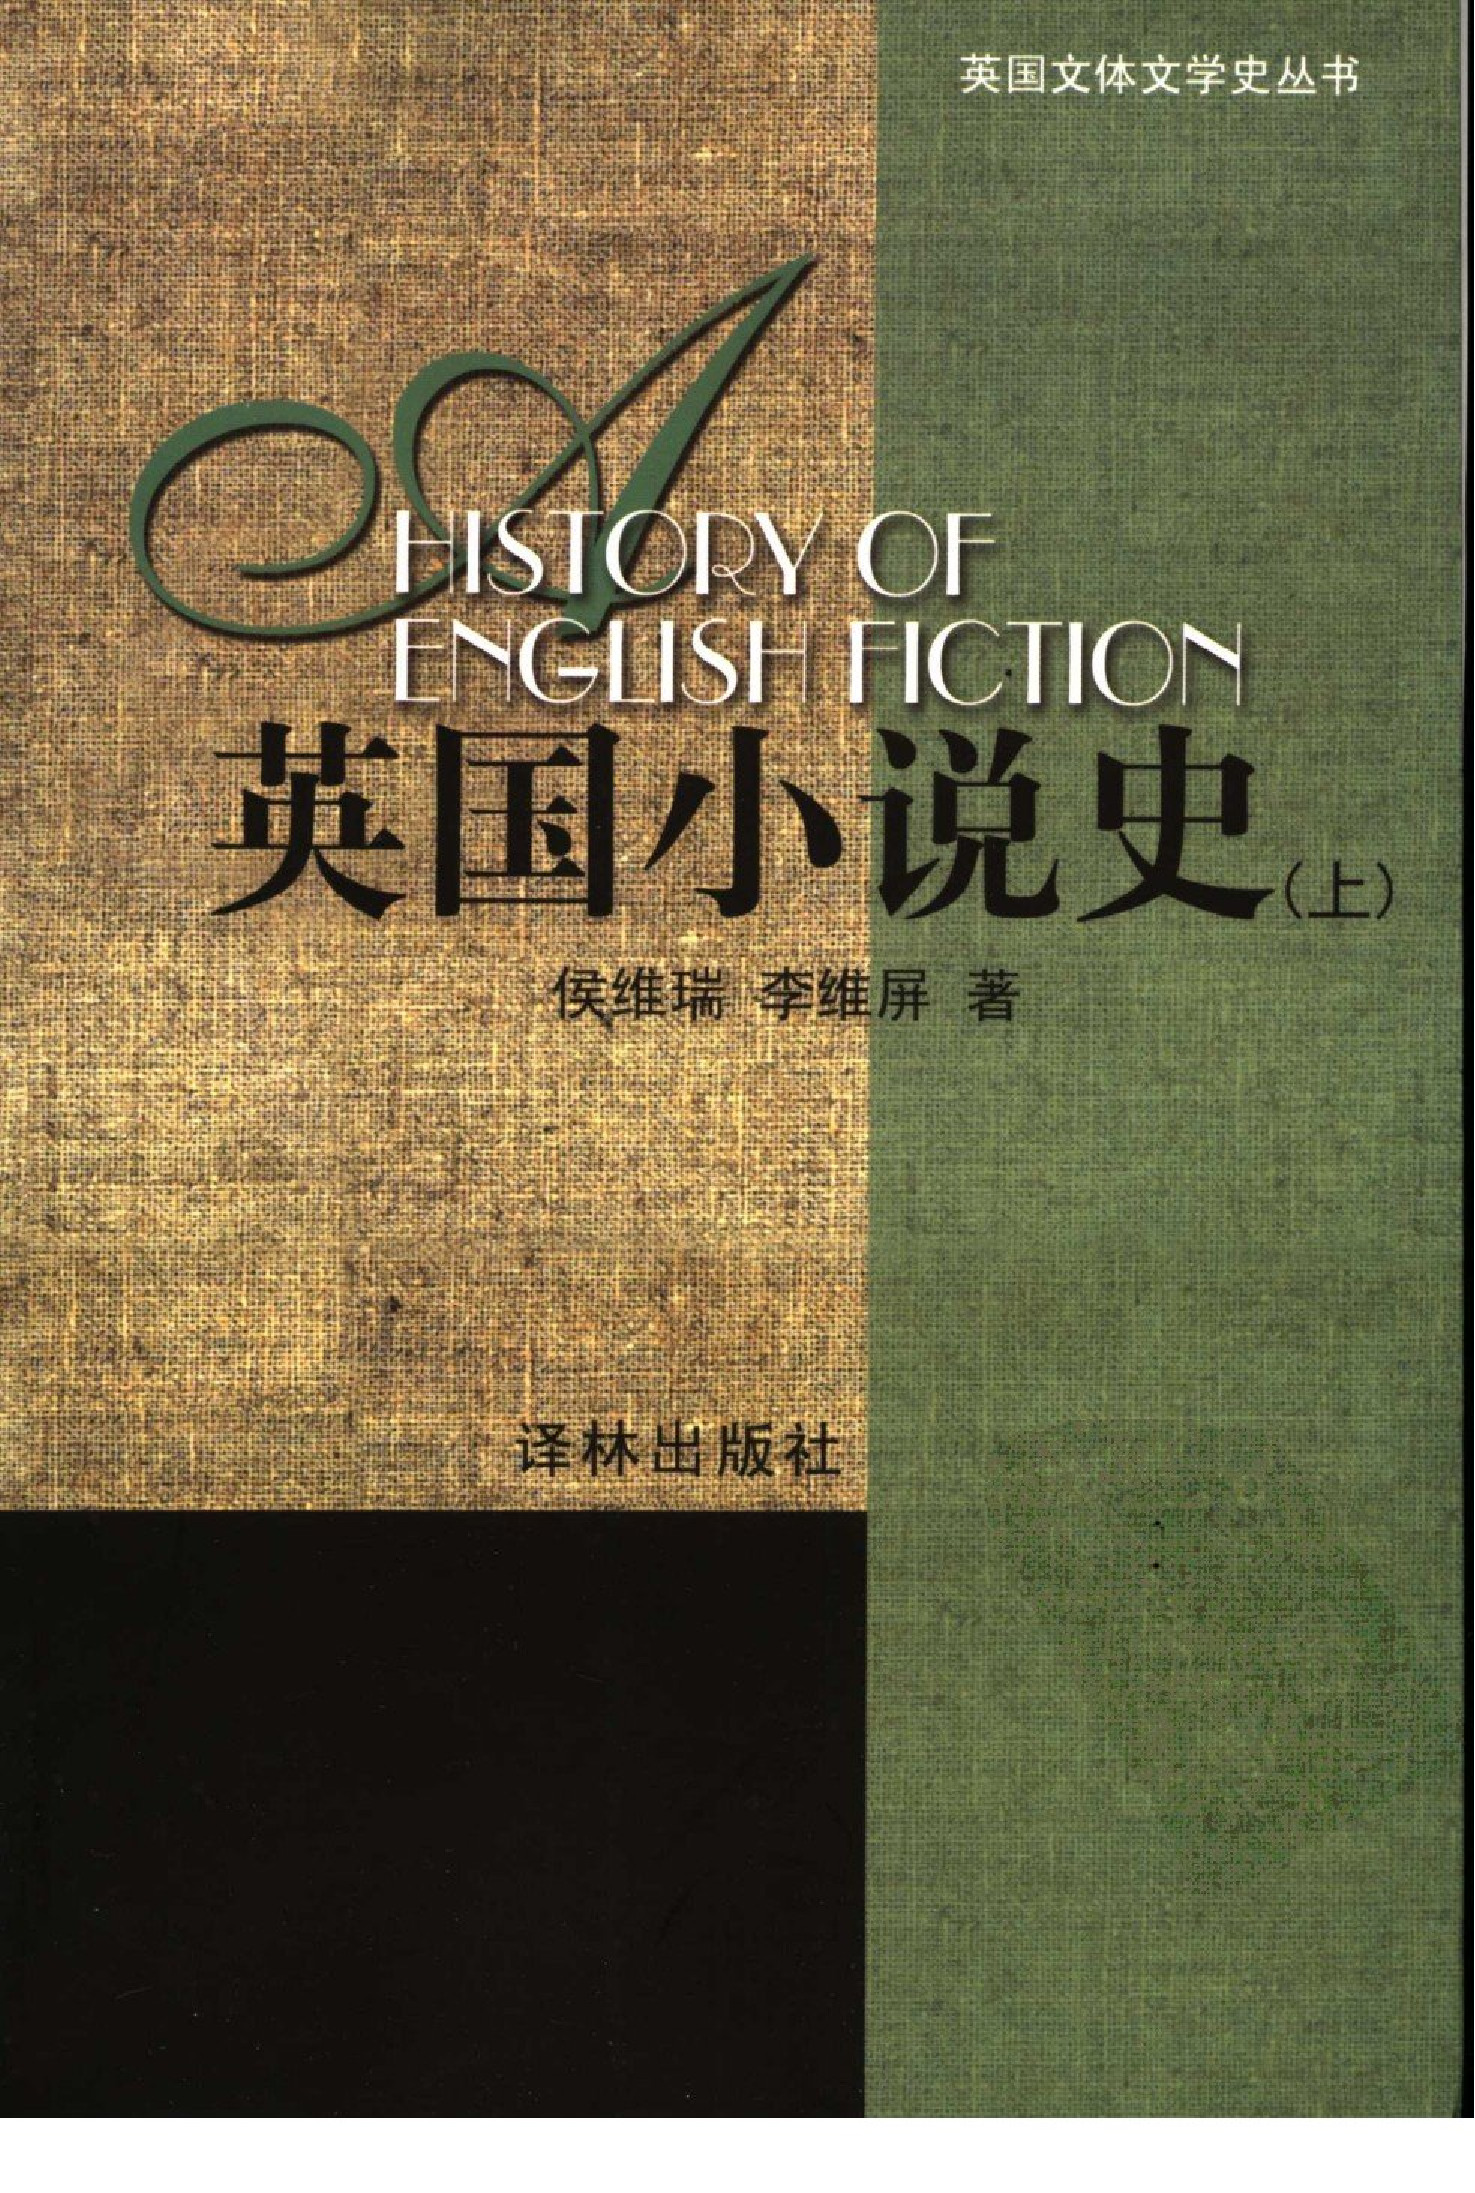 英国小说史-上.侯维瑞、李维屏著.译林出版社(2005)